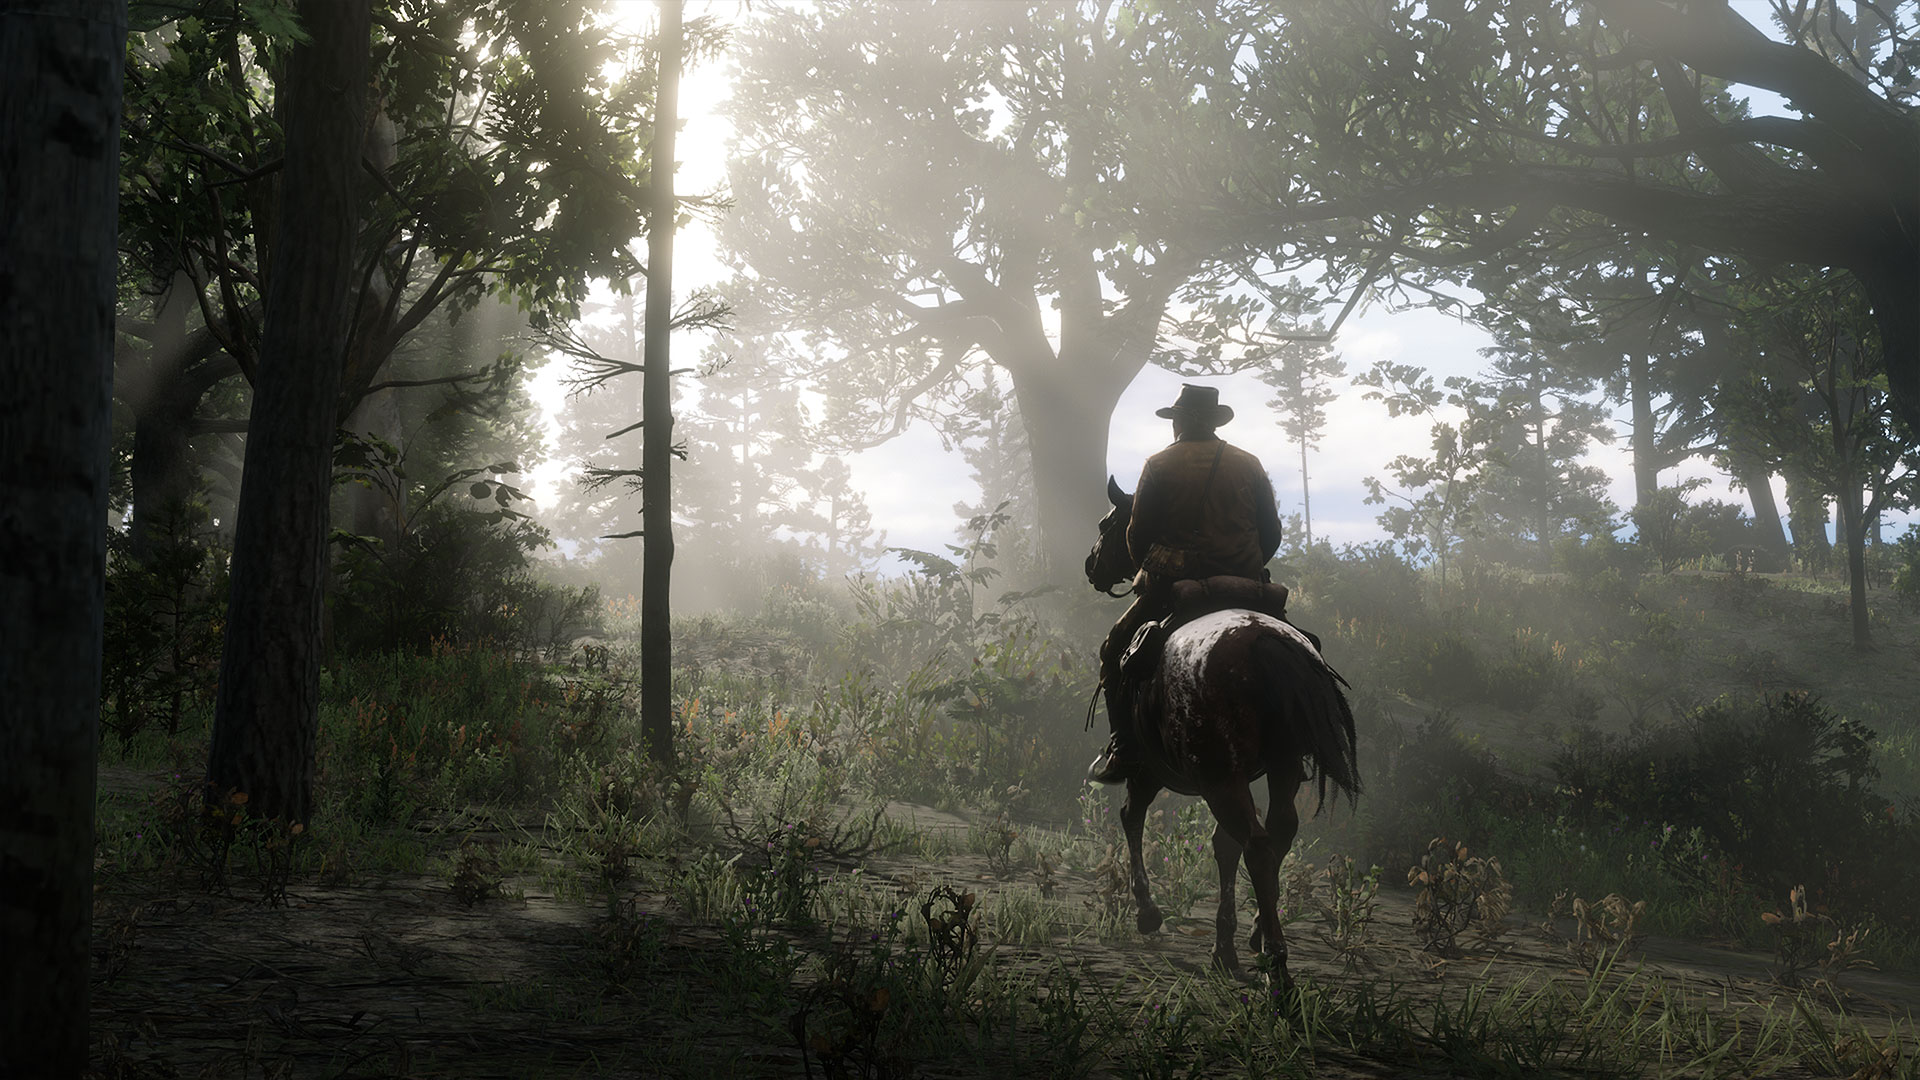 Calarit in mediul rural in Red Dead Redemption 2, unul dintre cele mai bune jocuri PS4 ale noastre